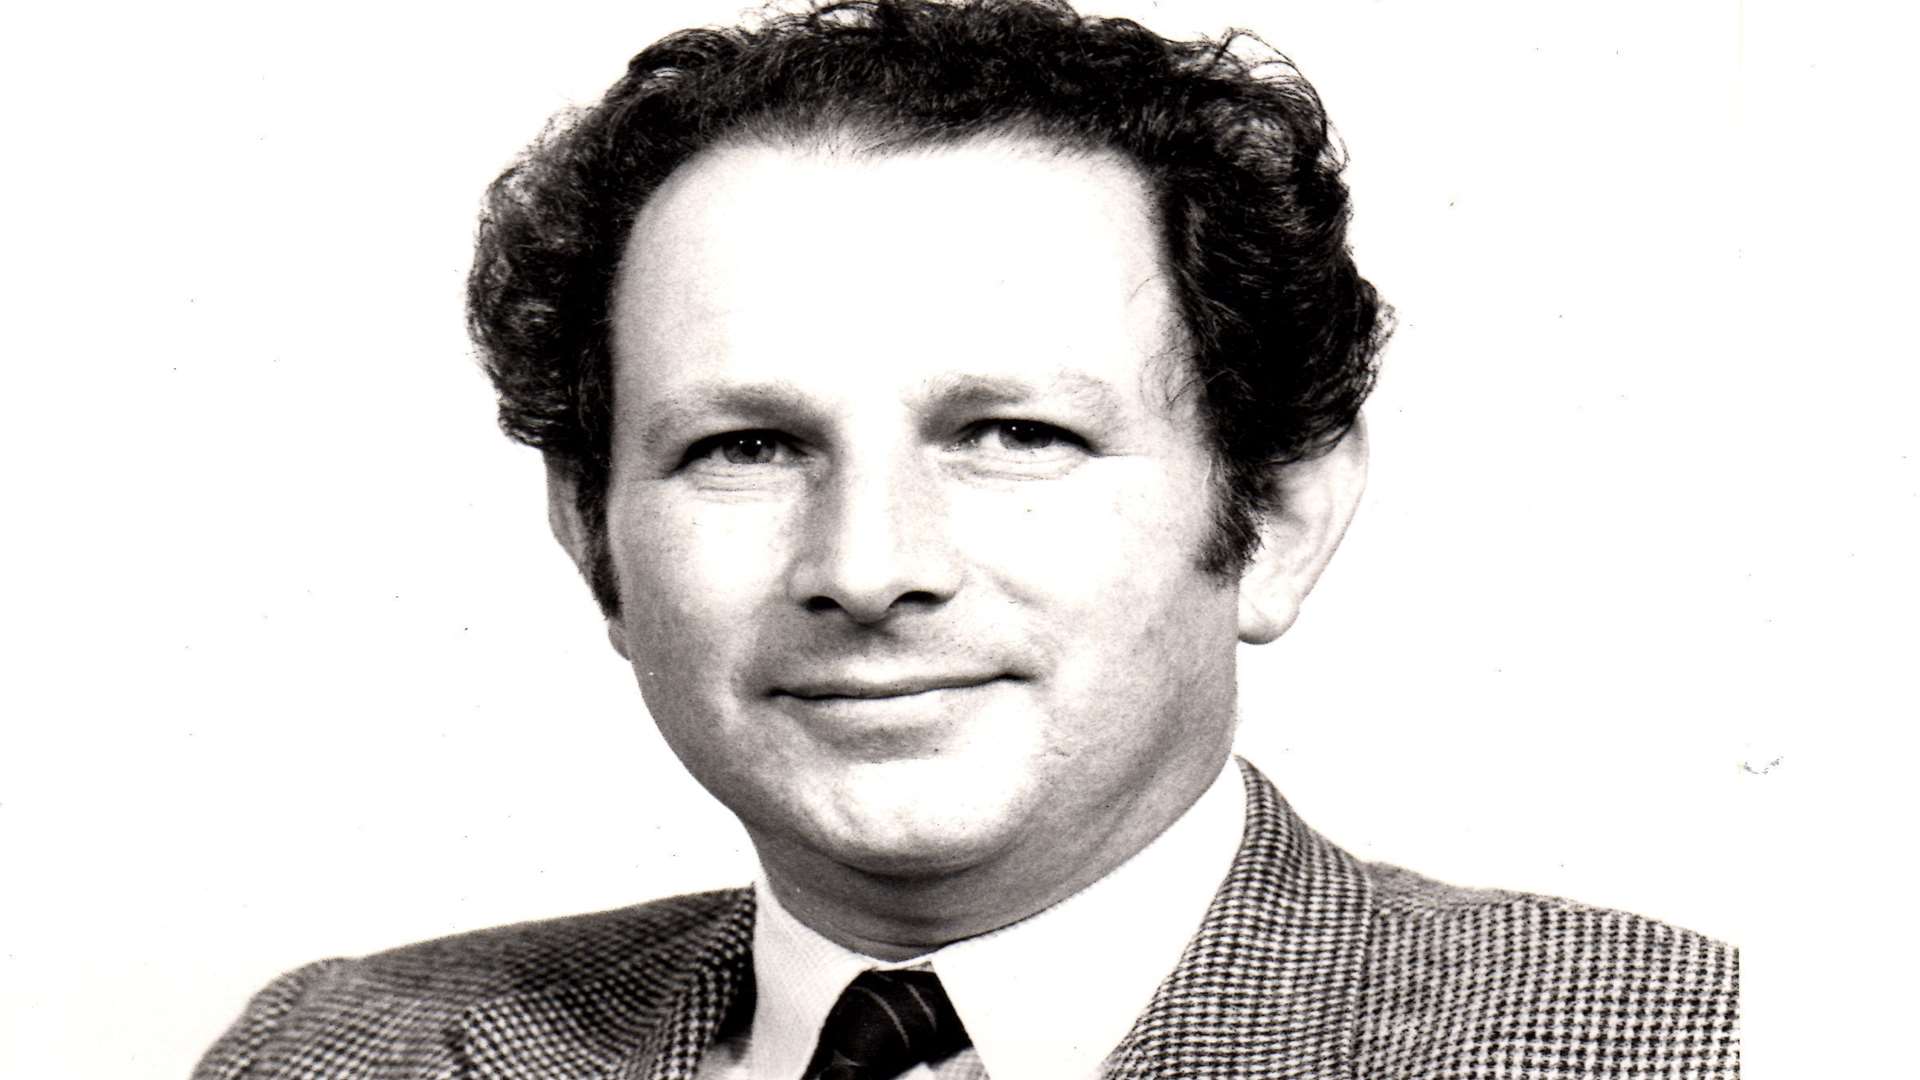 Trevor Seath as a councillor in the 1980s.